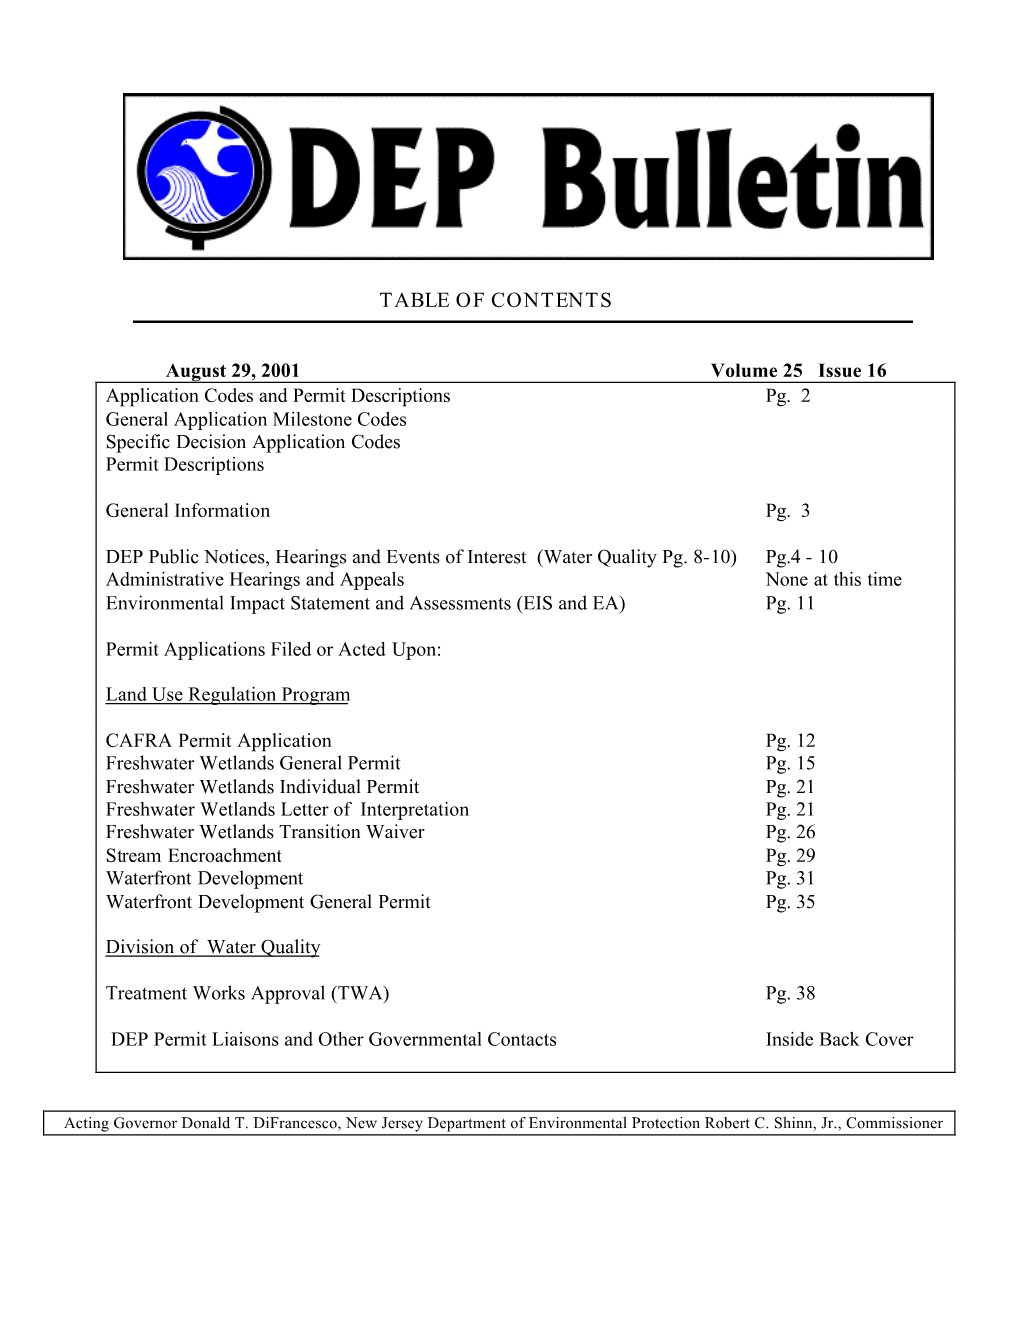 DEP Bulletin, 08/29/01